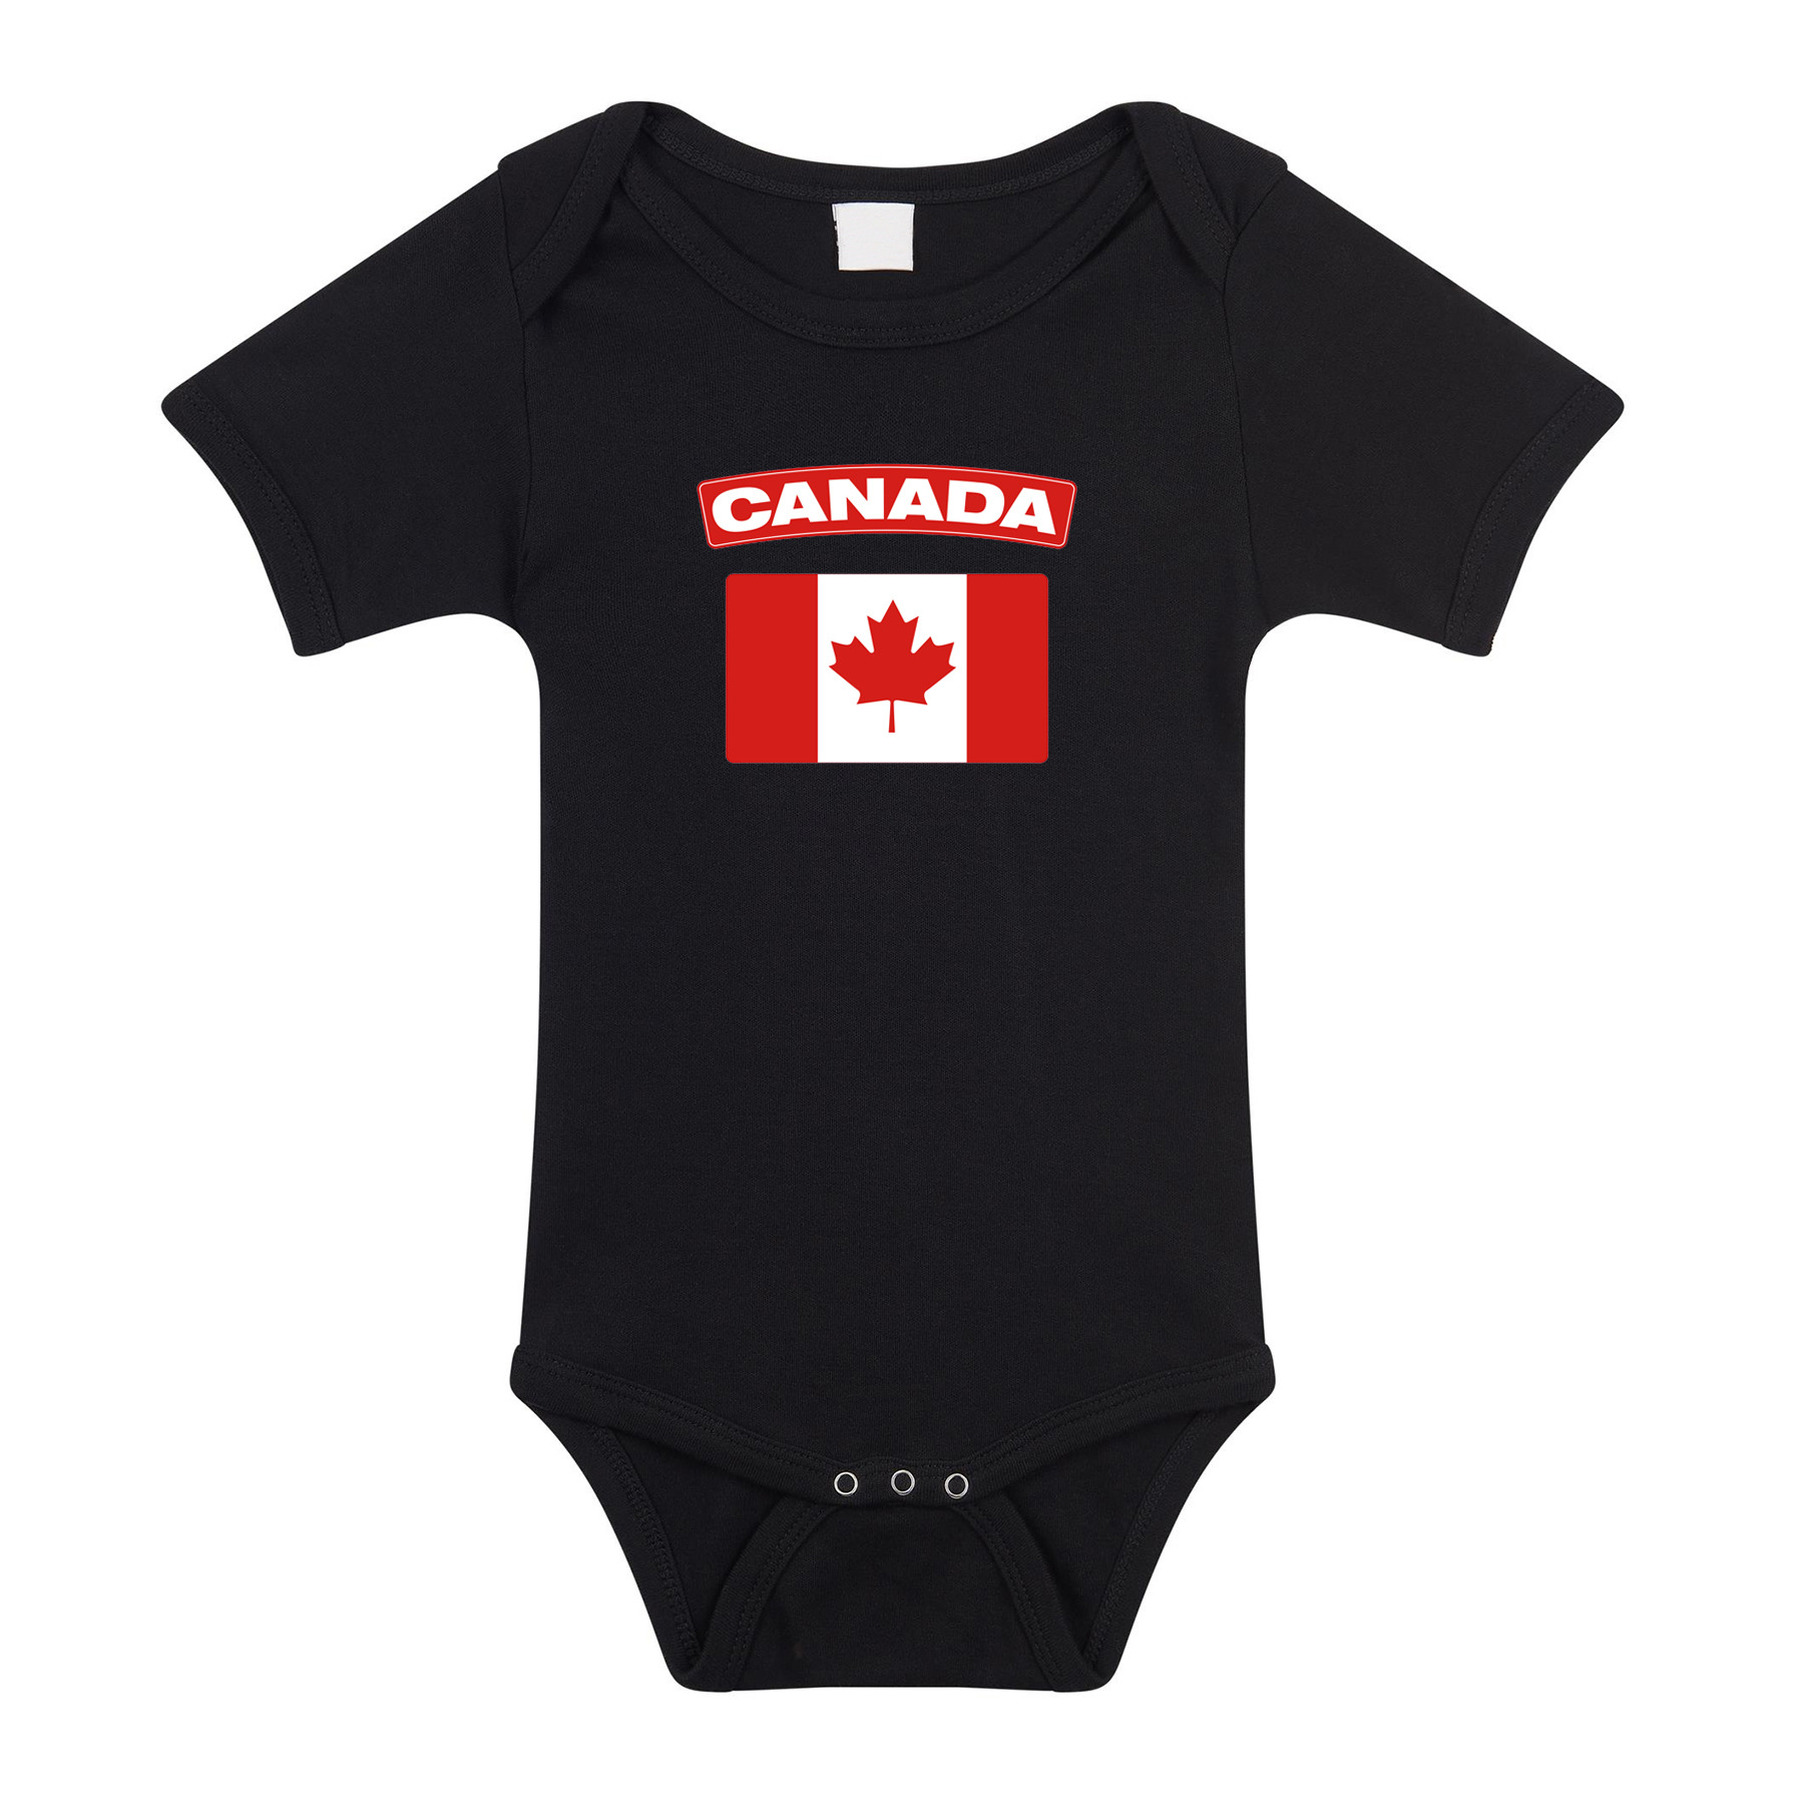 Canada landen rompertje met vlag zwart voor babys